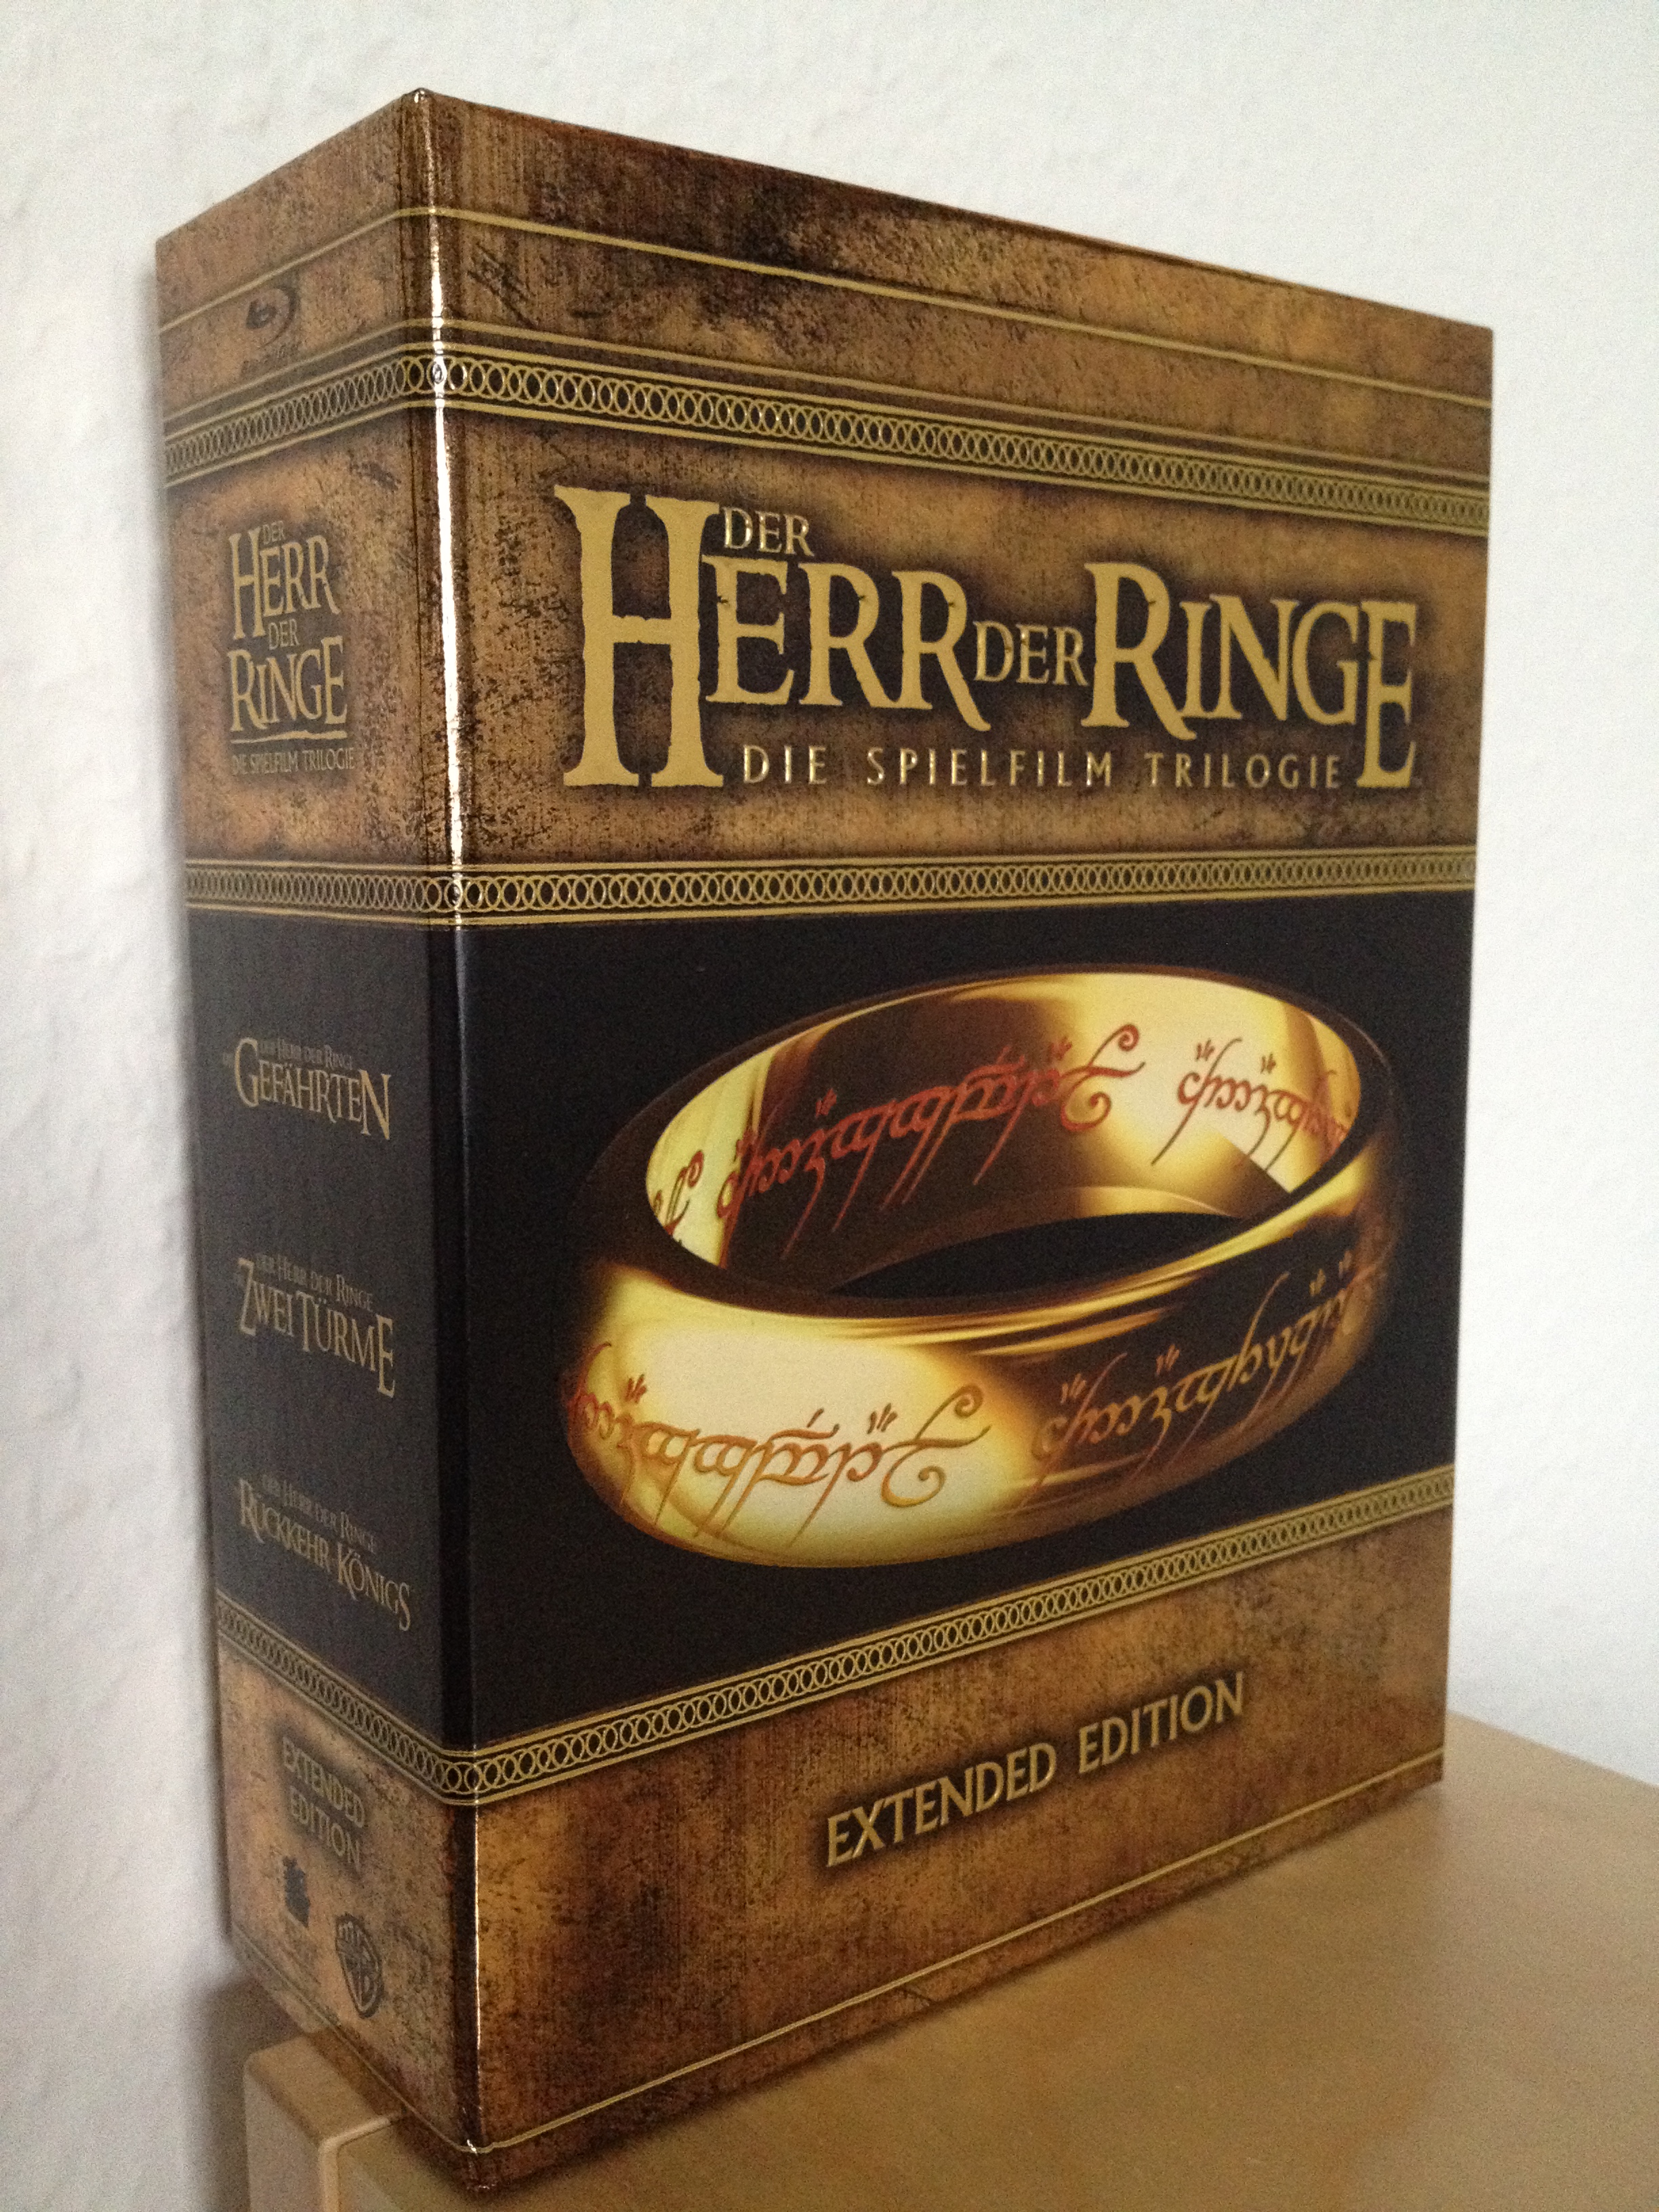 Der Herr der Ringe Extended Edition Bluray